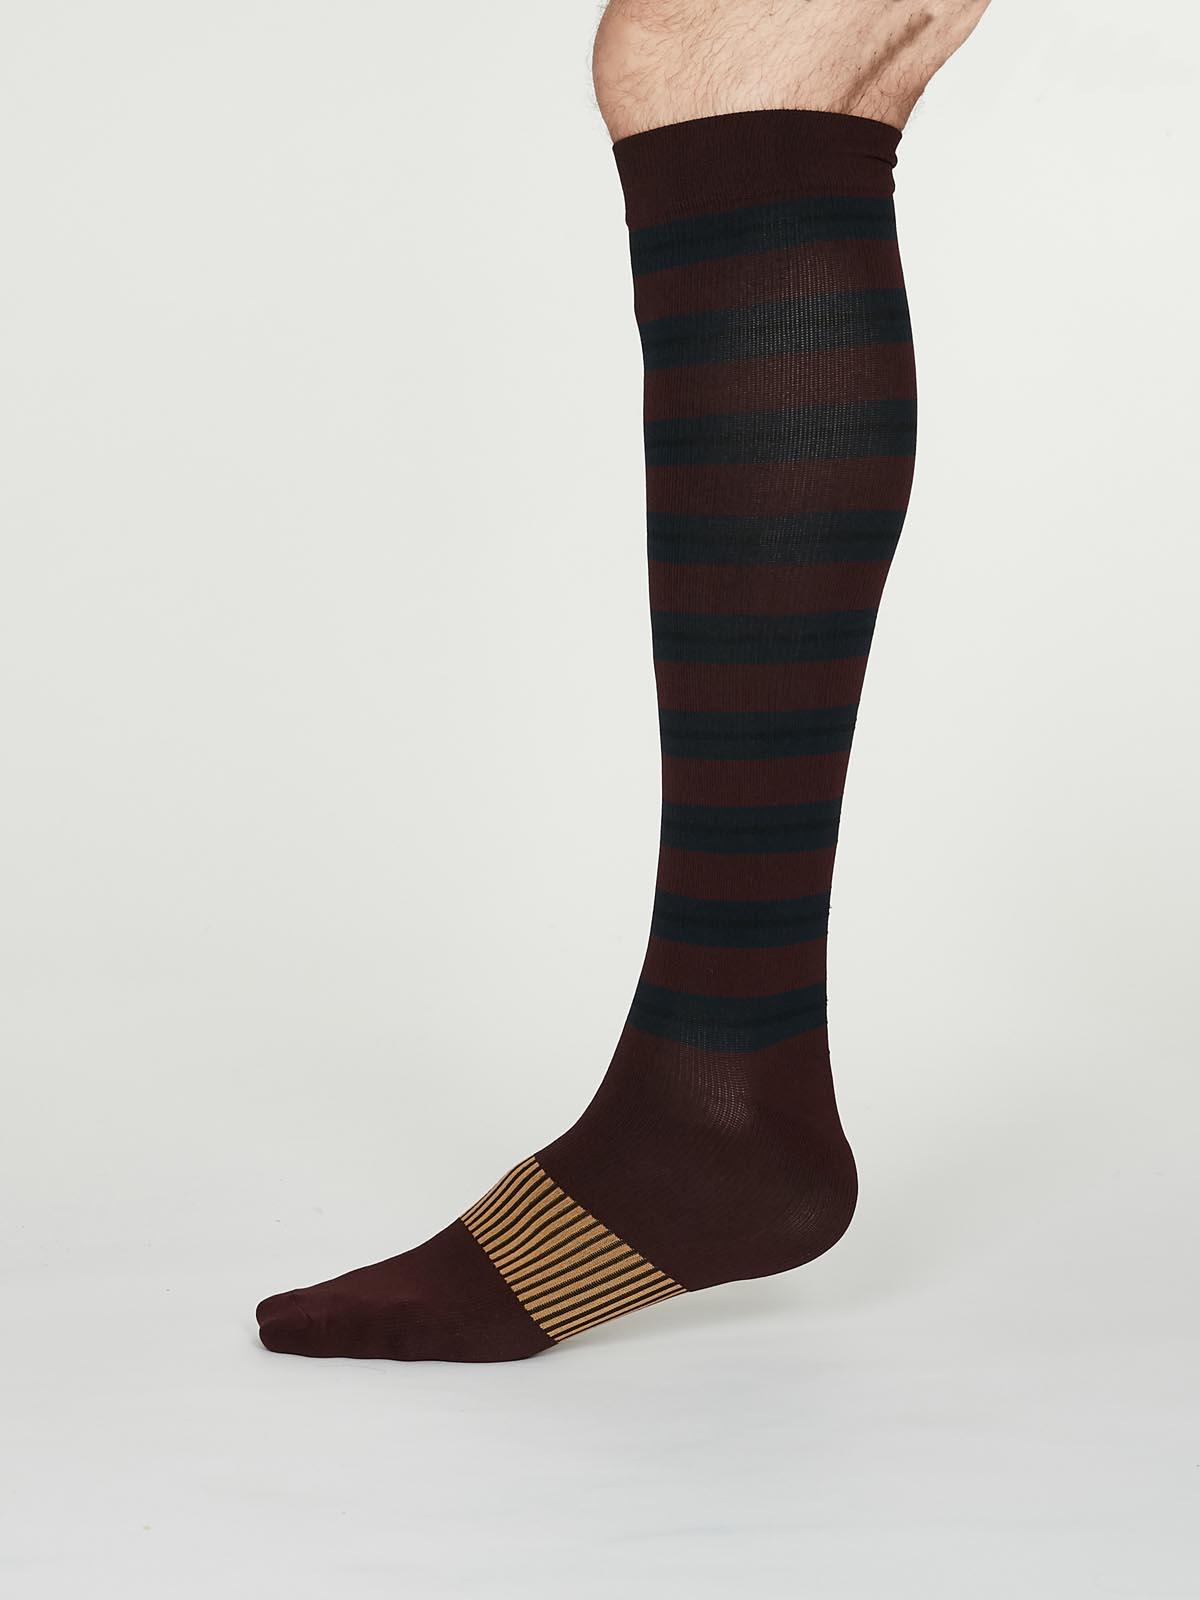 Thomas Compression Socks - Burgundy - Thought Clothing UK